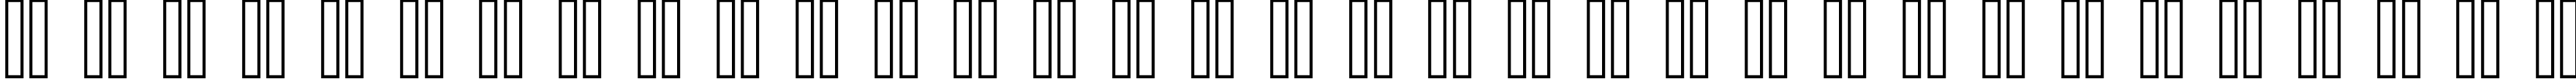 Пример написания русского алфавита шрифтом copy 10_55